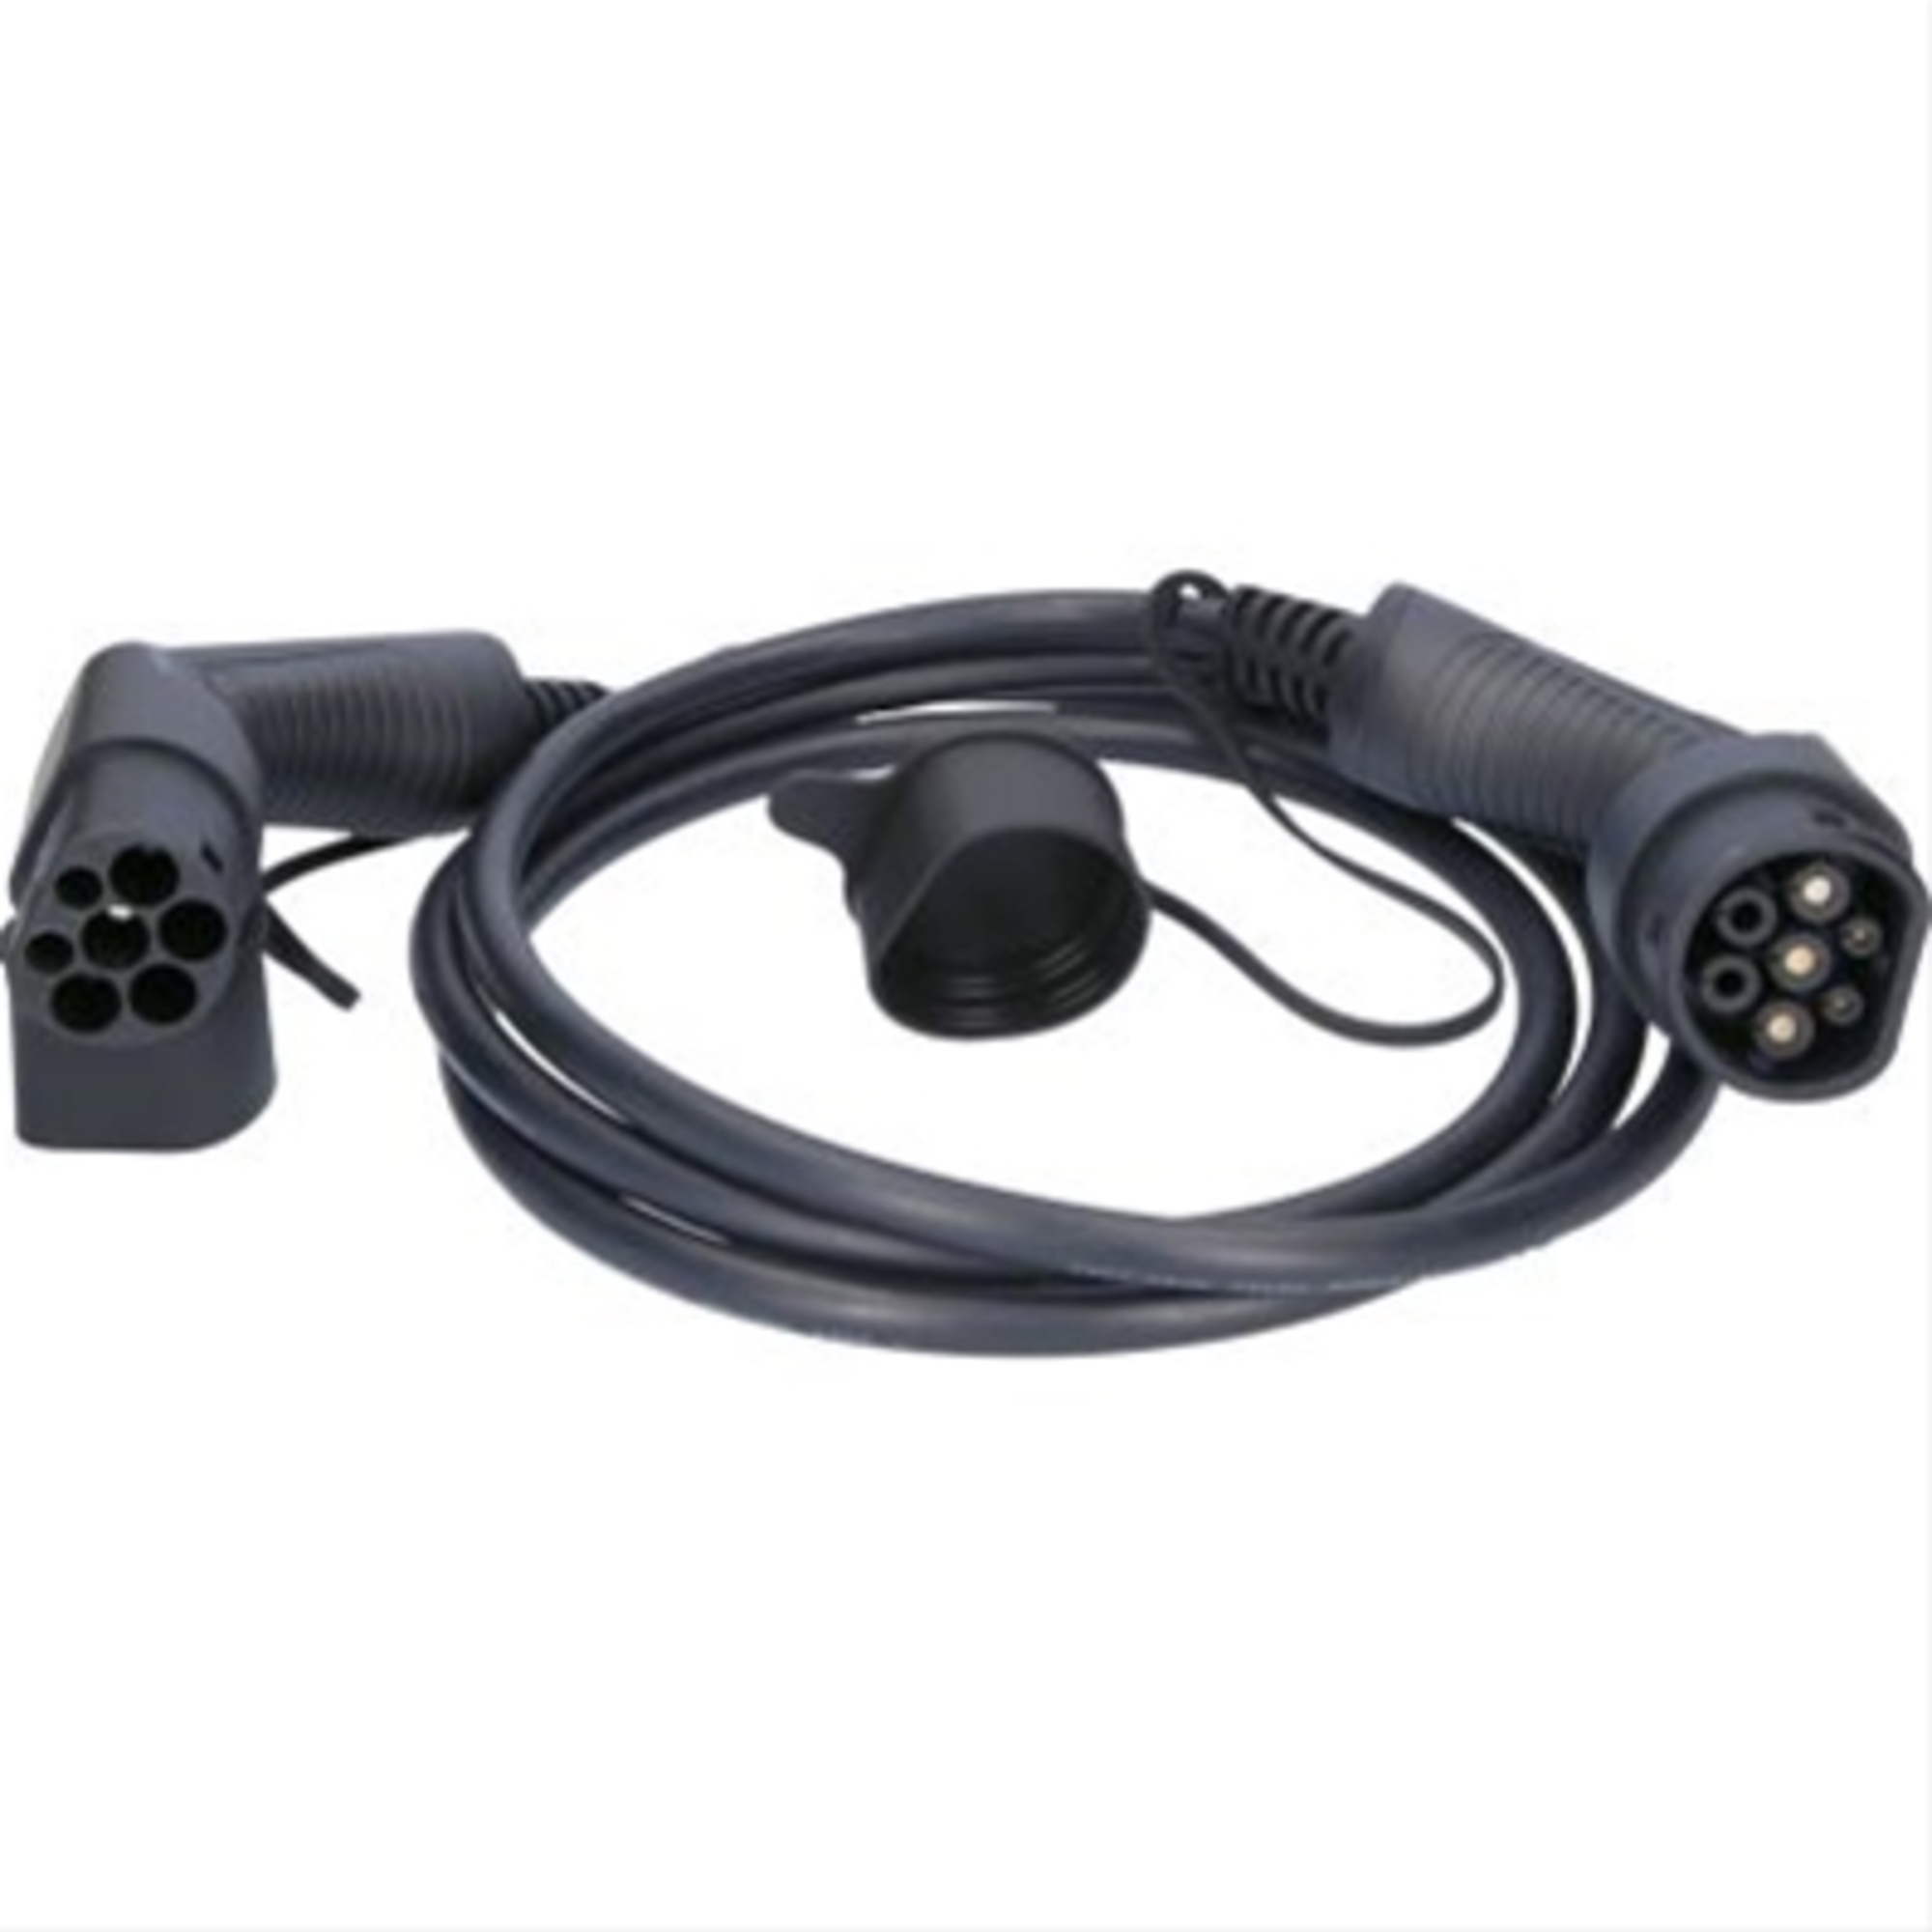 Cablu de incarcare drept typ 2 / typ 2 7.4 kw 230 v 32 a 3m-efuturo ks-tools